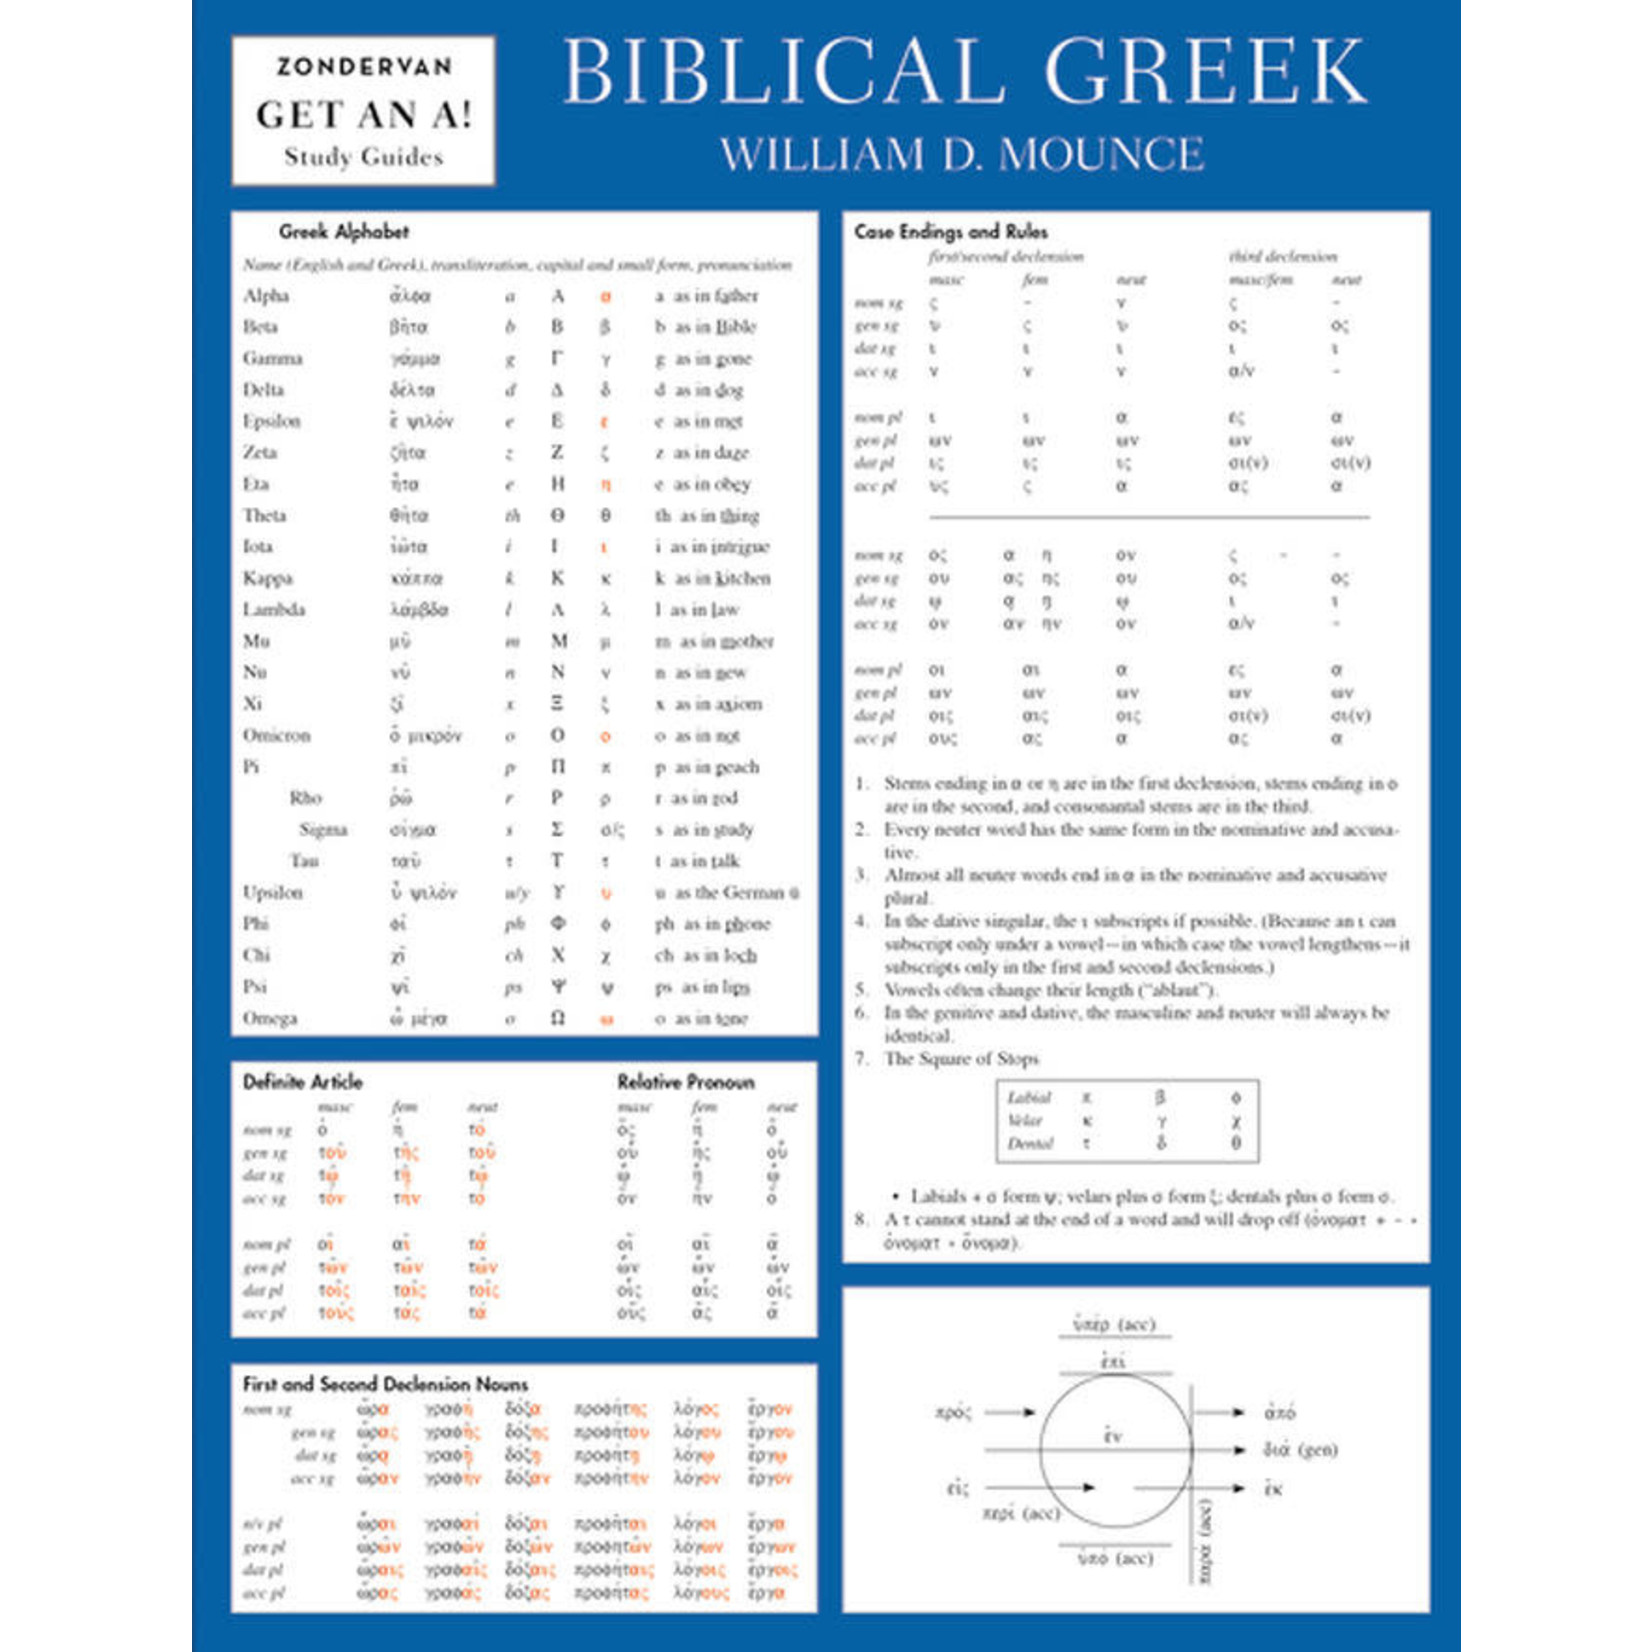 Get an a! Biblical Greek